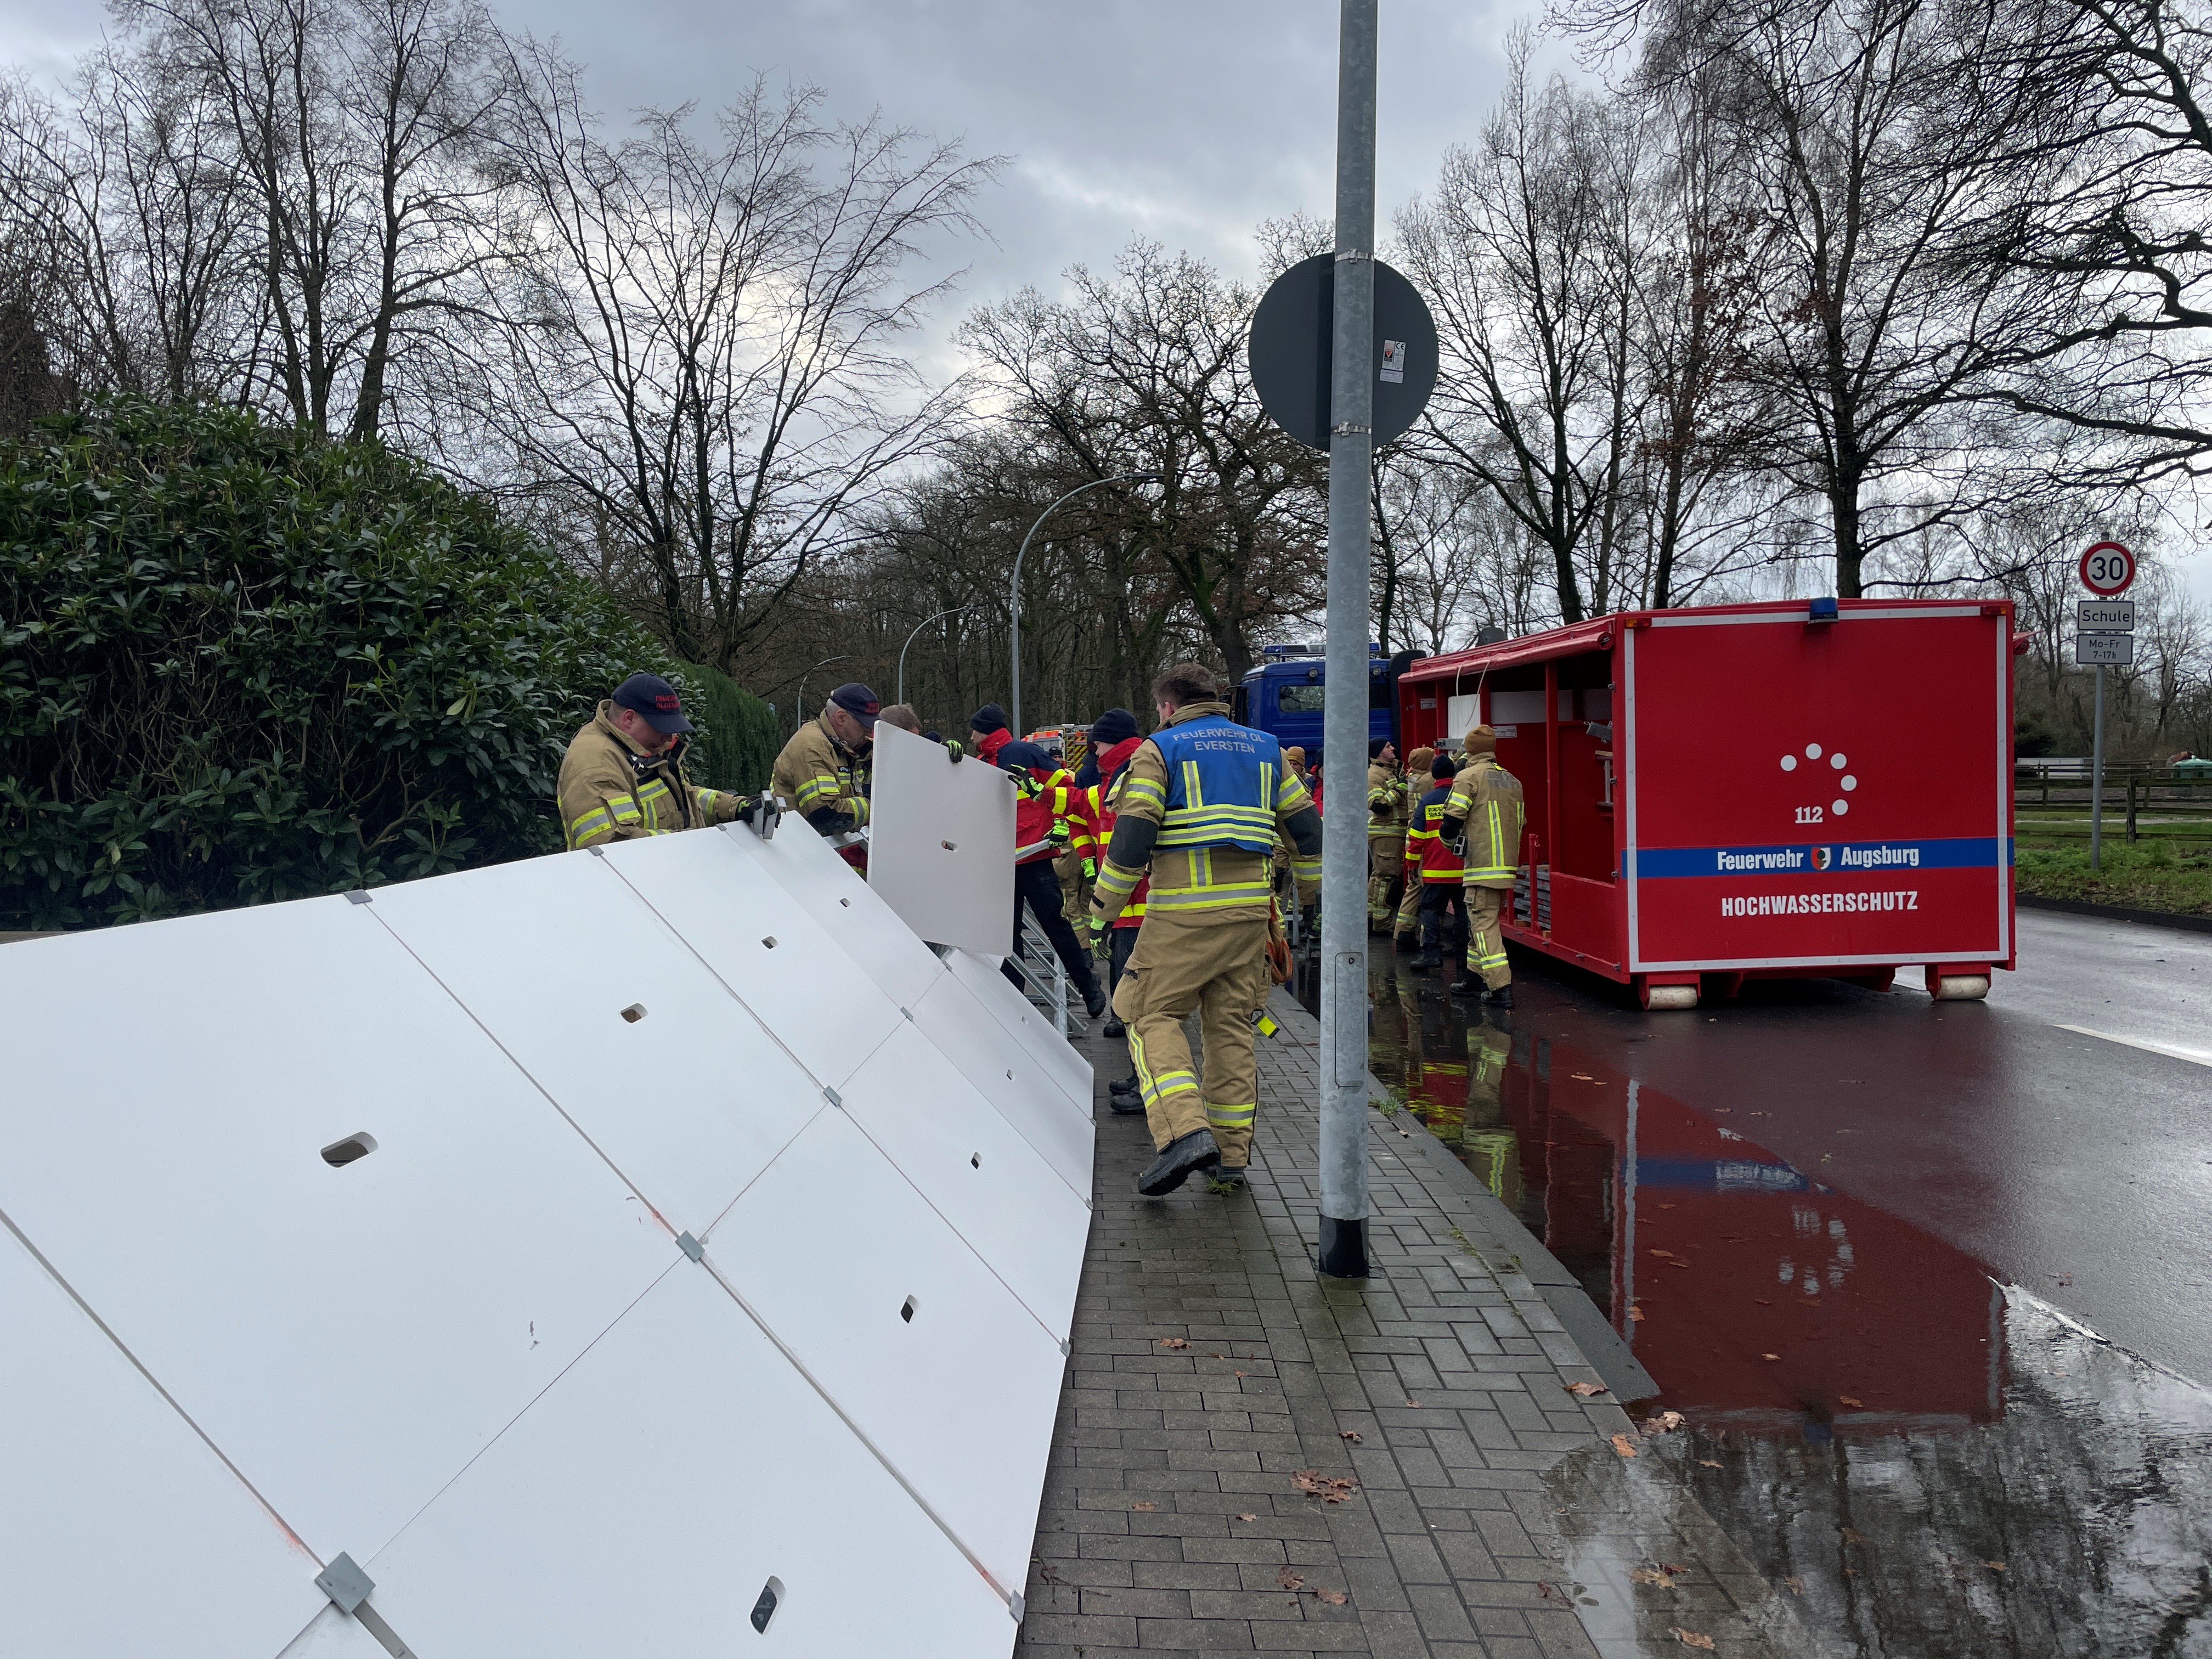 Feuerwehrleute kombinieren Einzelelemente zu einer Schutzwand; auf der Straße steht ein roter Transportcontainer mit der Aufschrift Feuerwehr Augsburg, Hochwasserschutz.